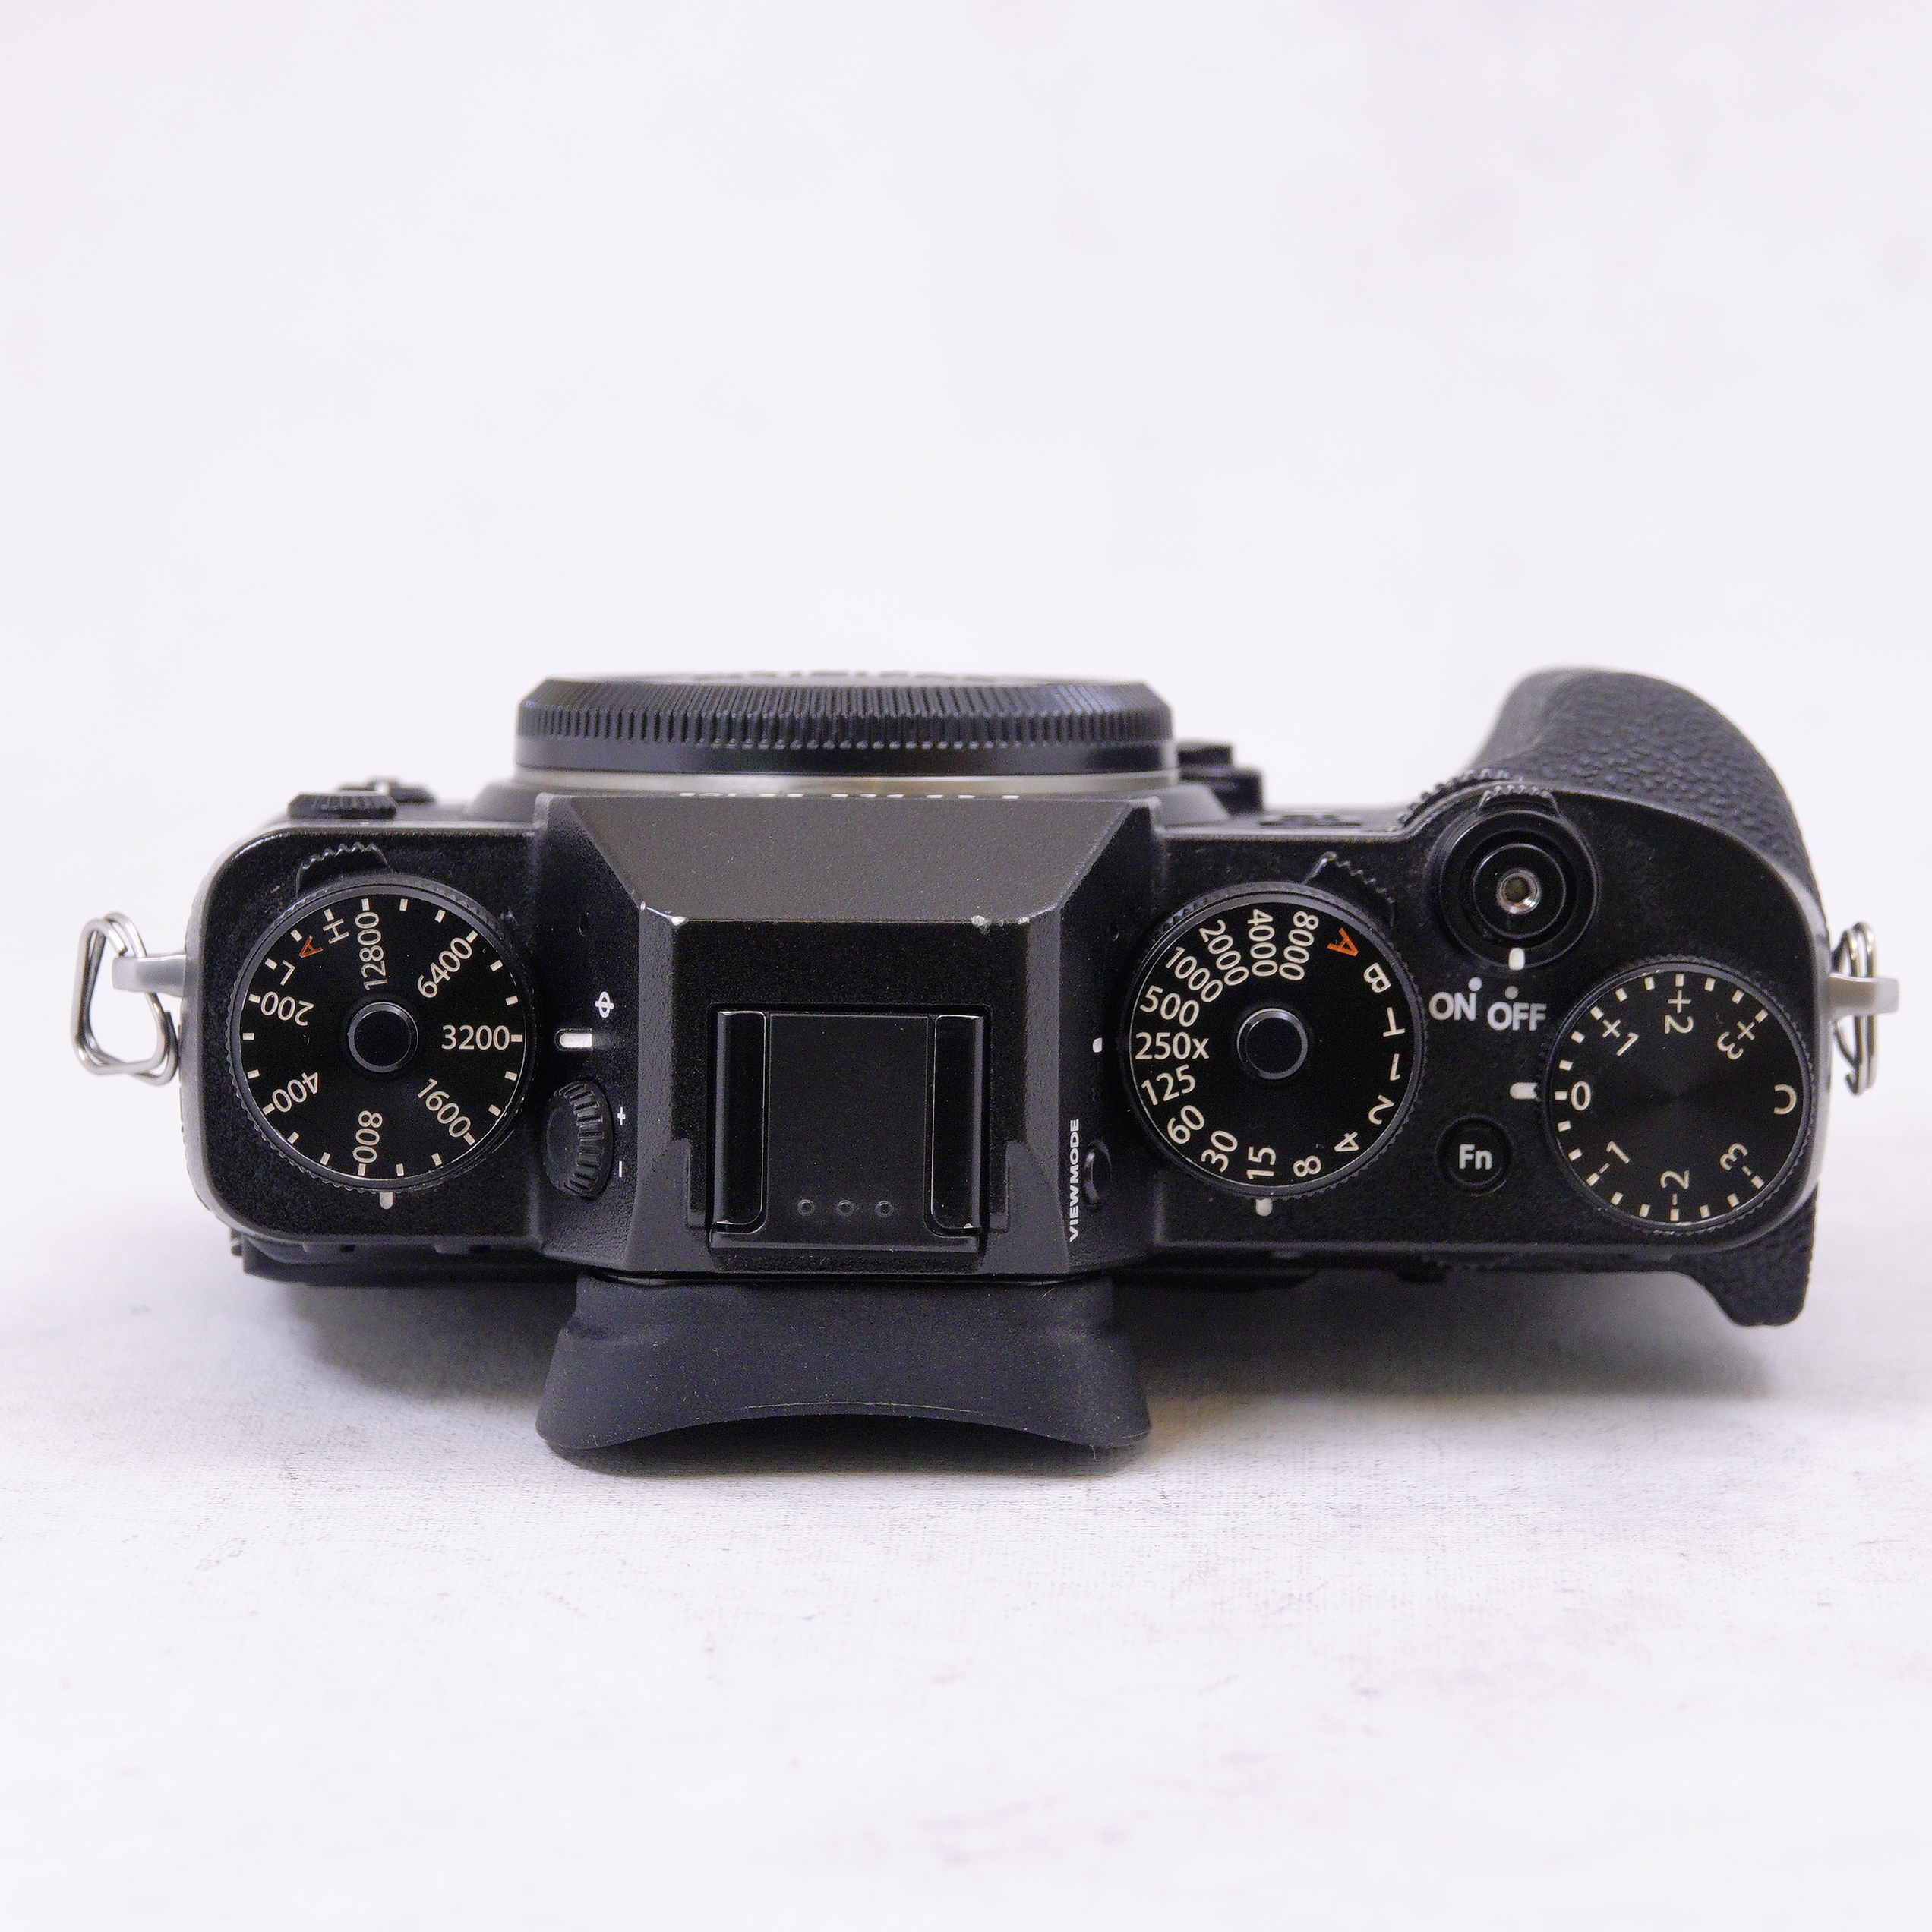 FUJIFILM X-T2 (Cuerpo) en caja original más accesorios - Usado